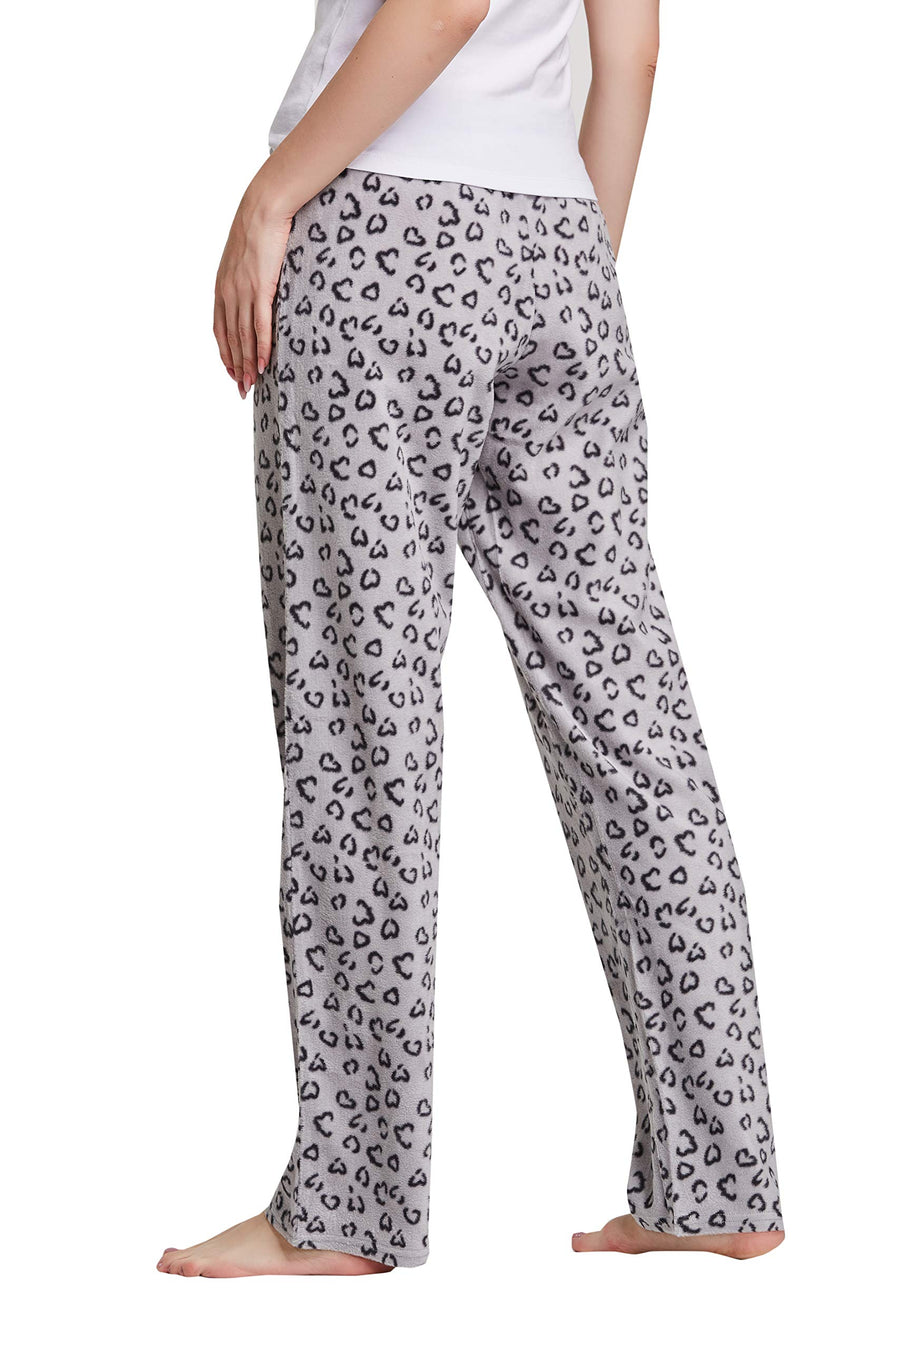 CYZ Women's Fleece Sleep Pajama Pant – CYZ Collection